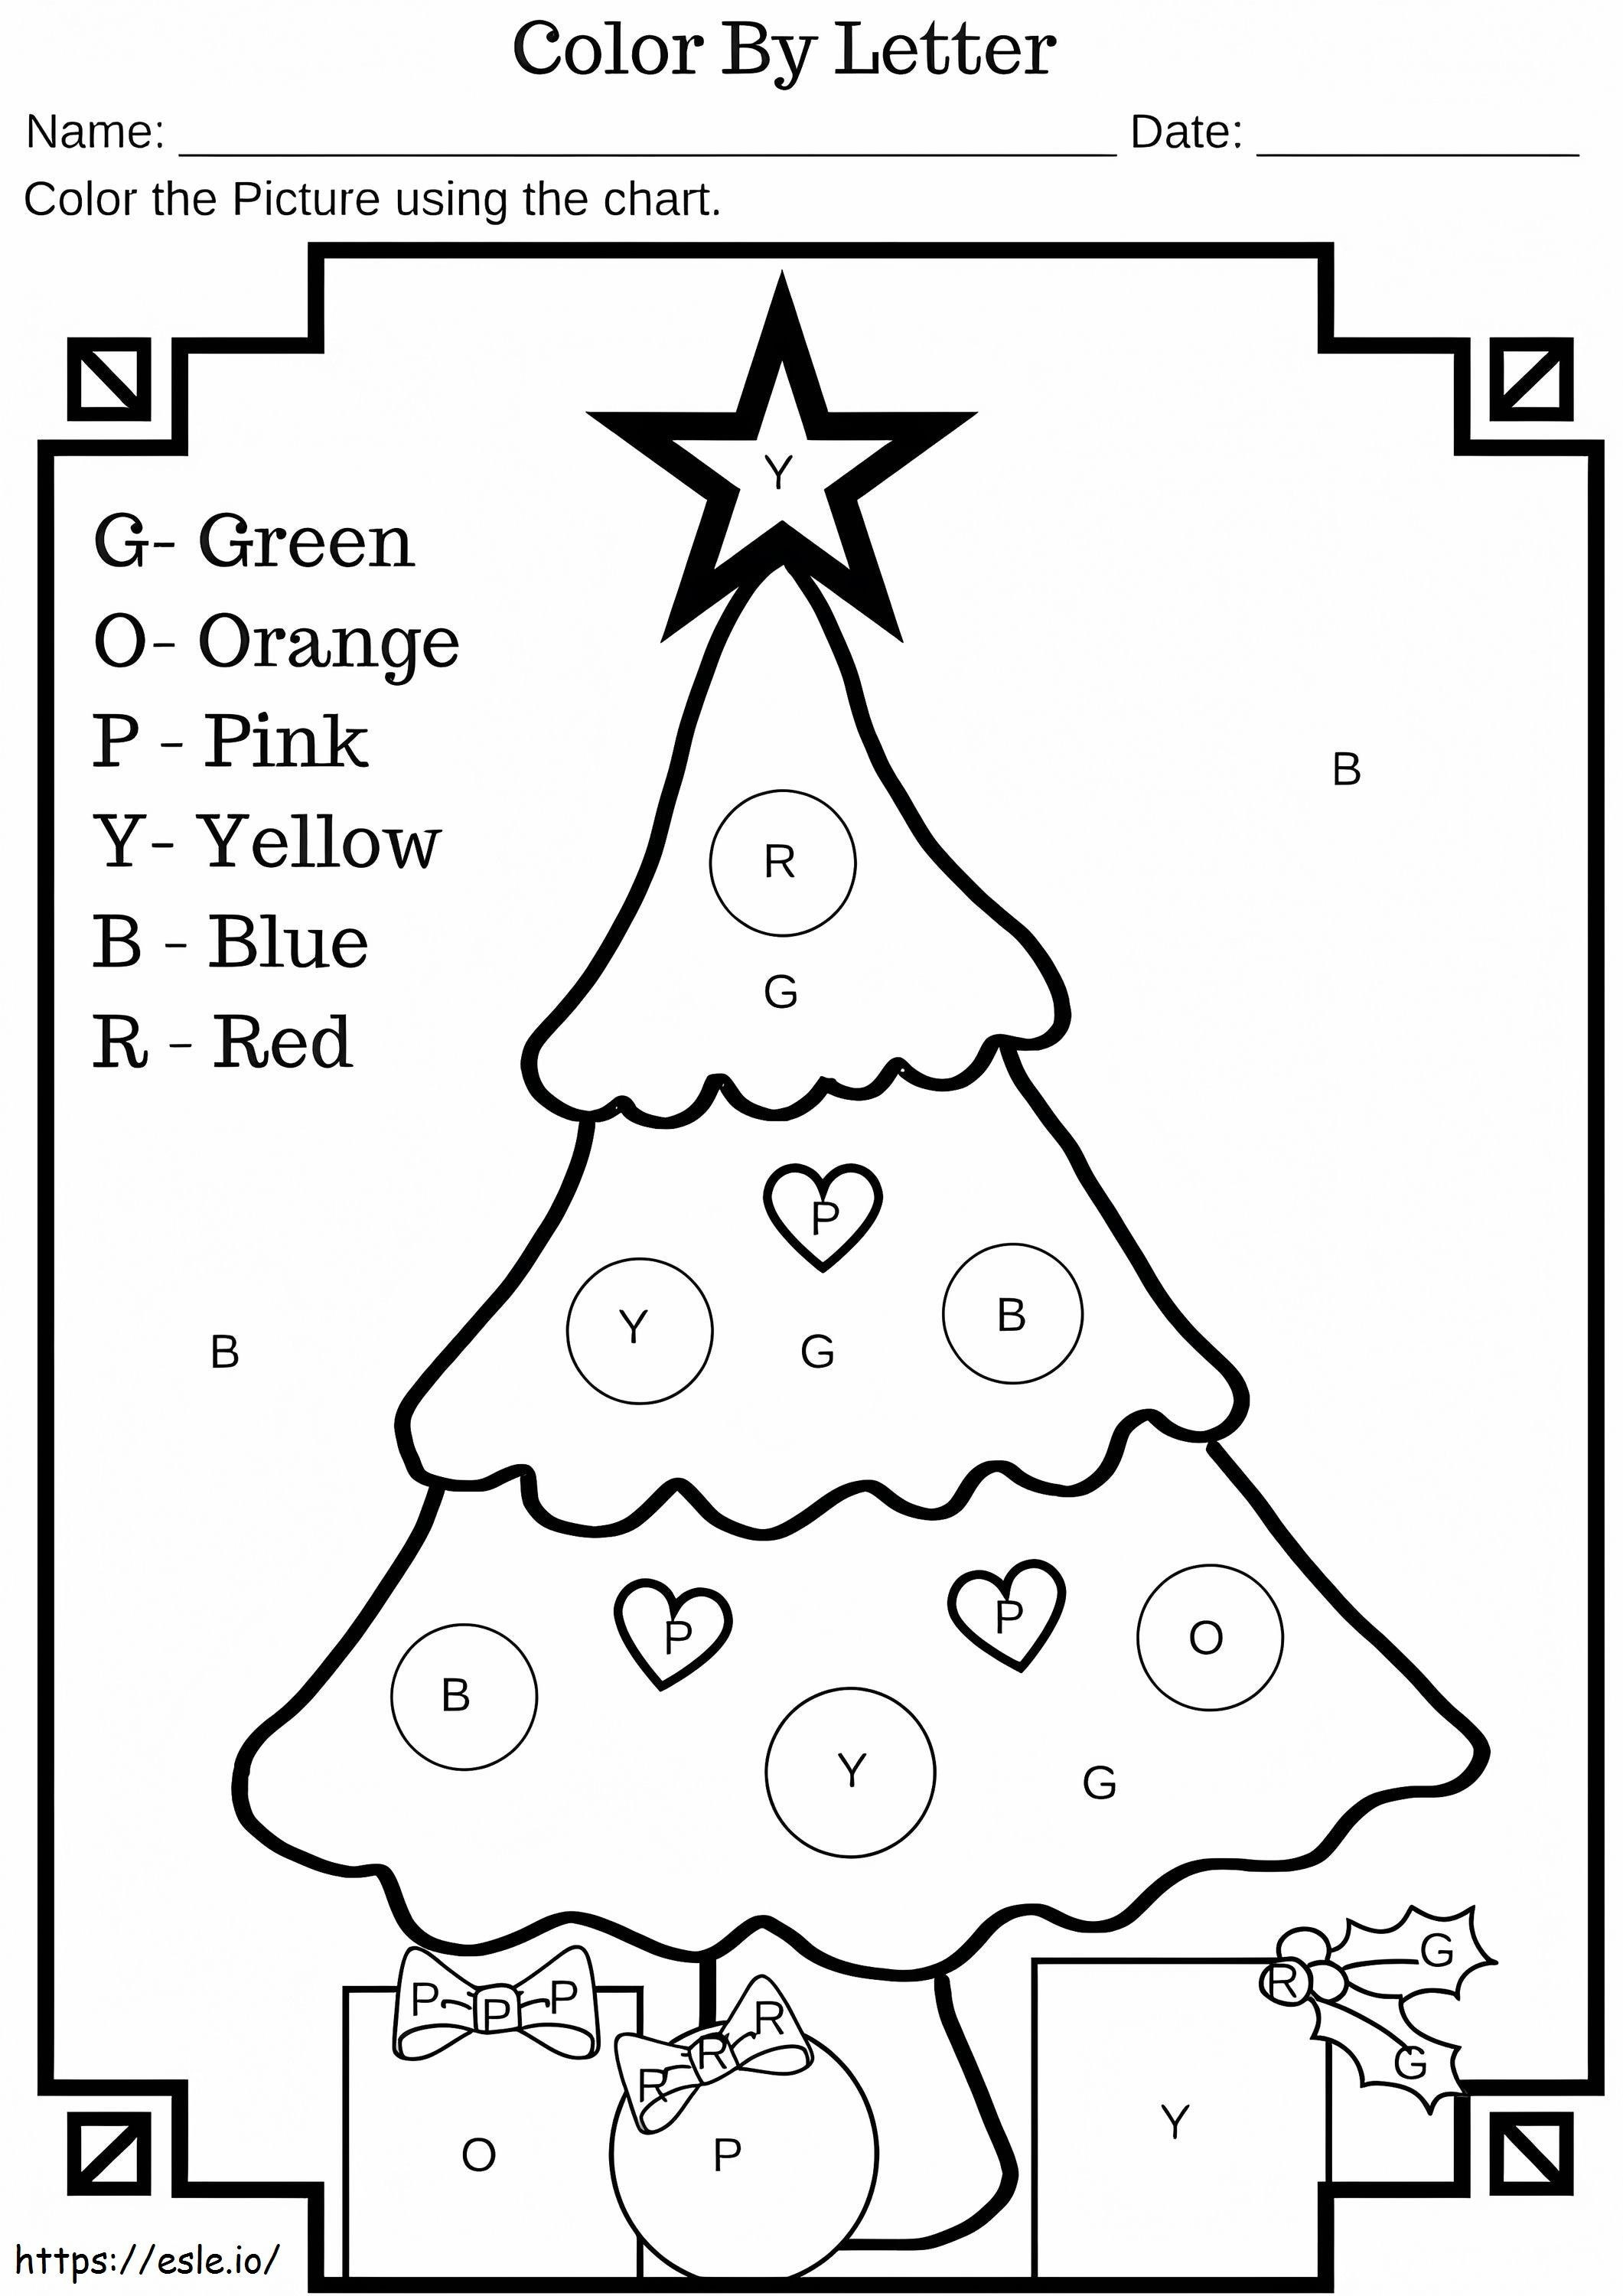 Color del árbol de Navidad por letras para colorear